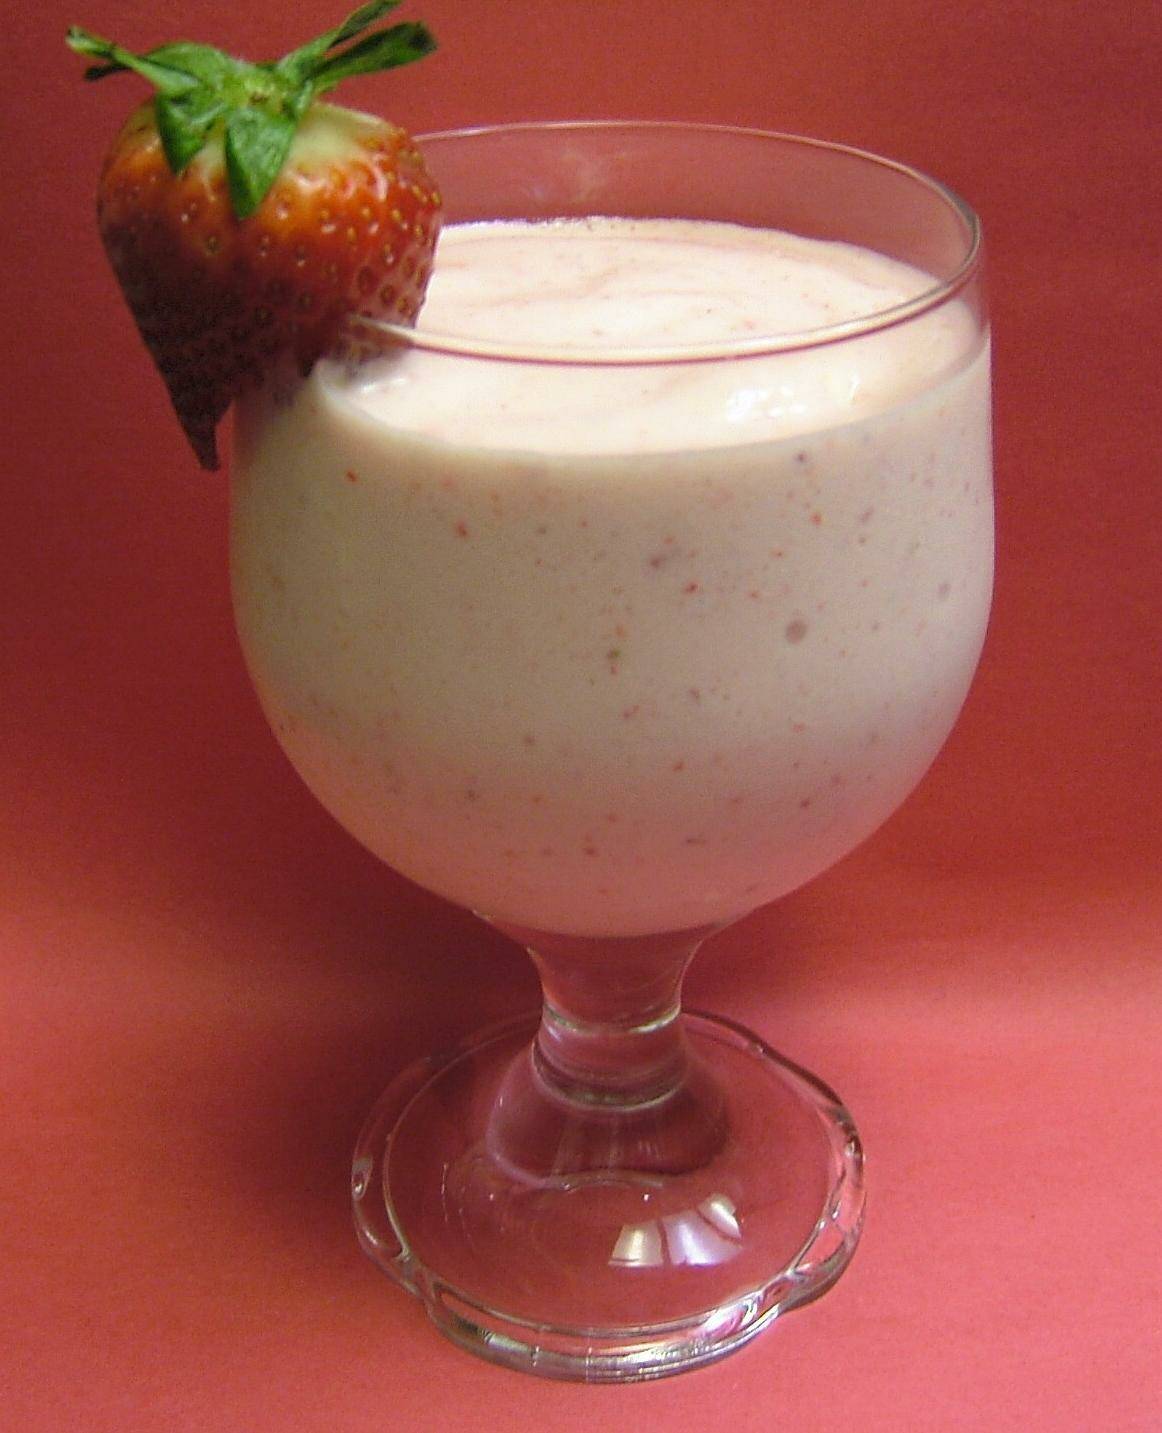 Refreshing Strawberry Daiquiri Recipe To Beat The Heat